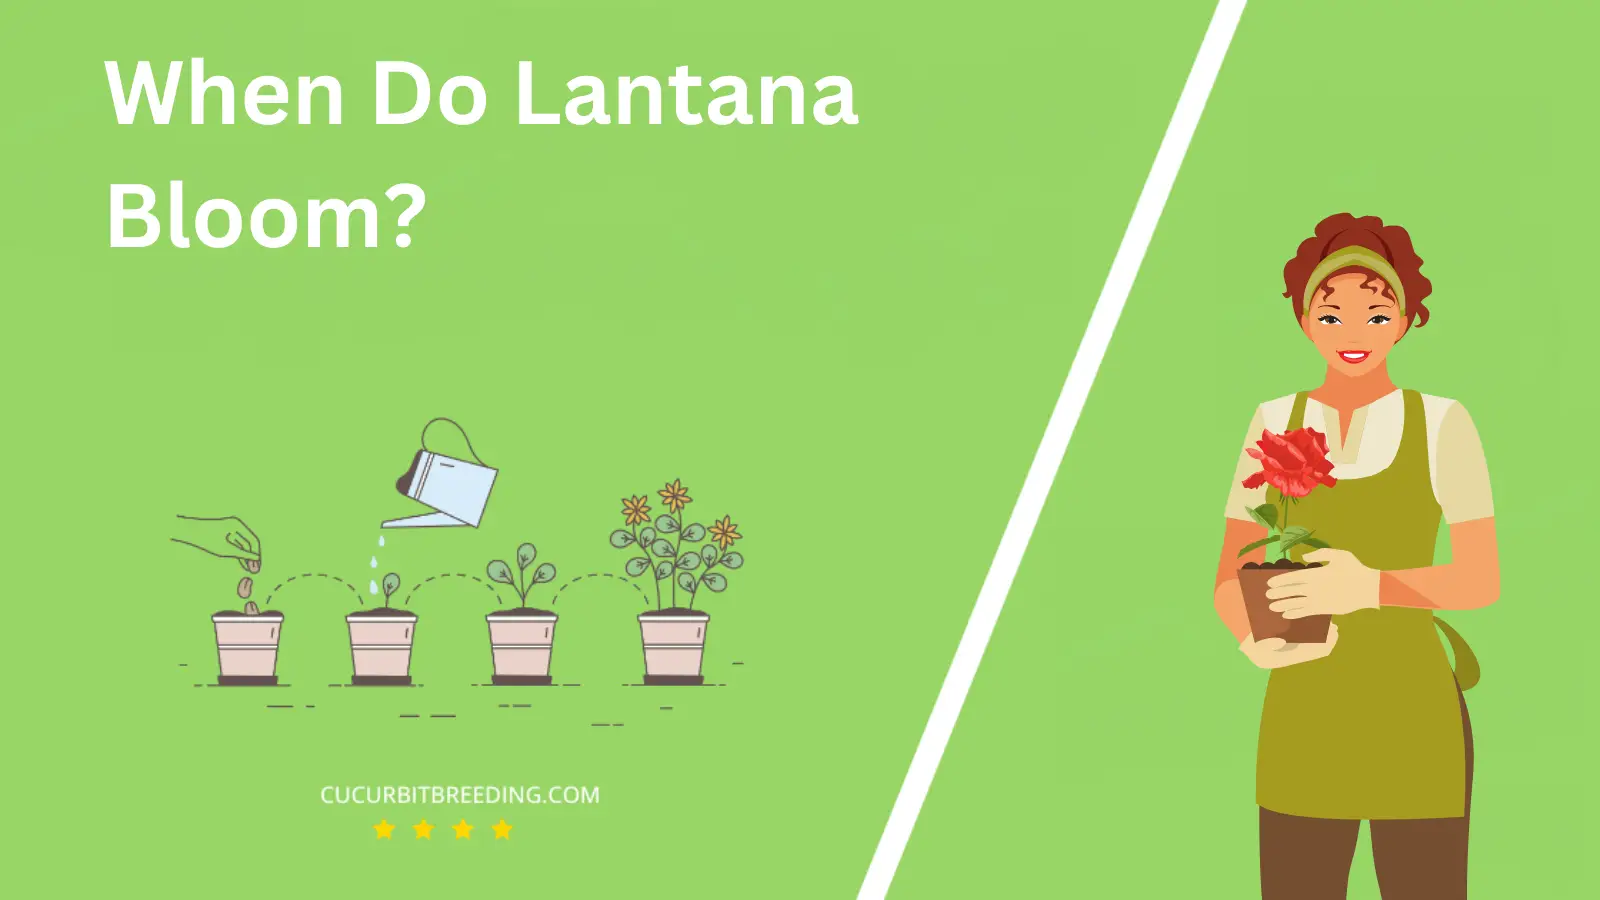 When Do Lantana Bloom?